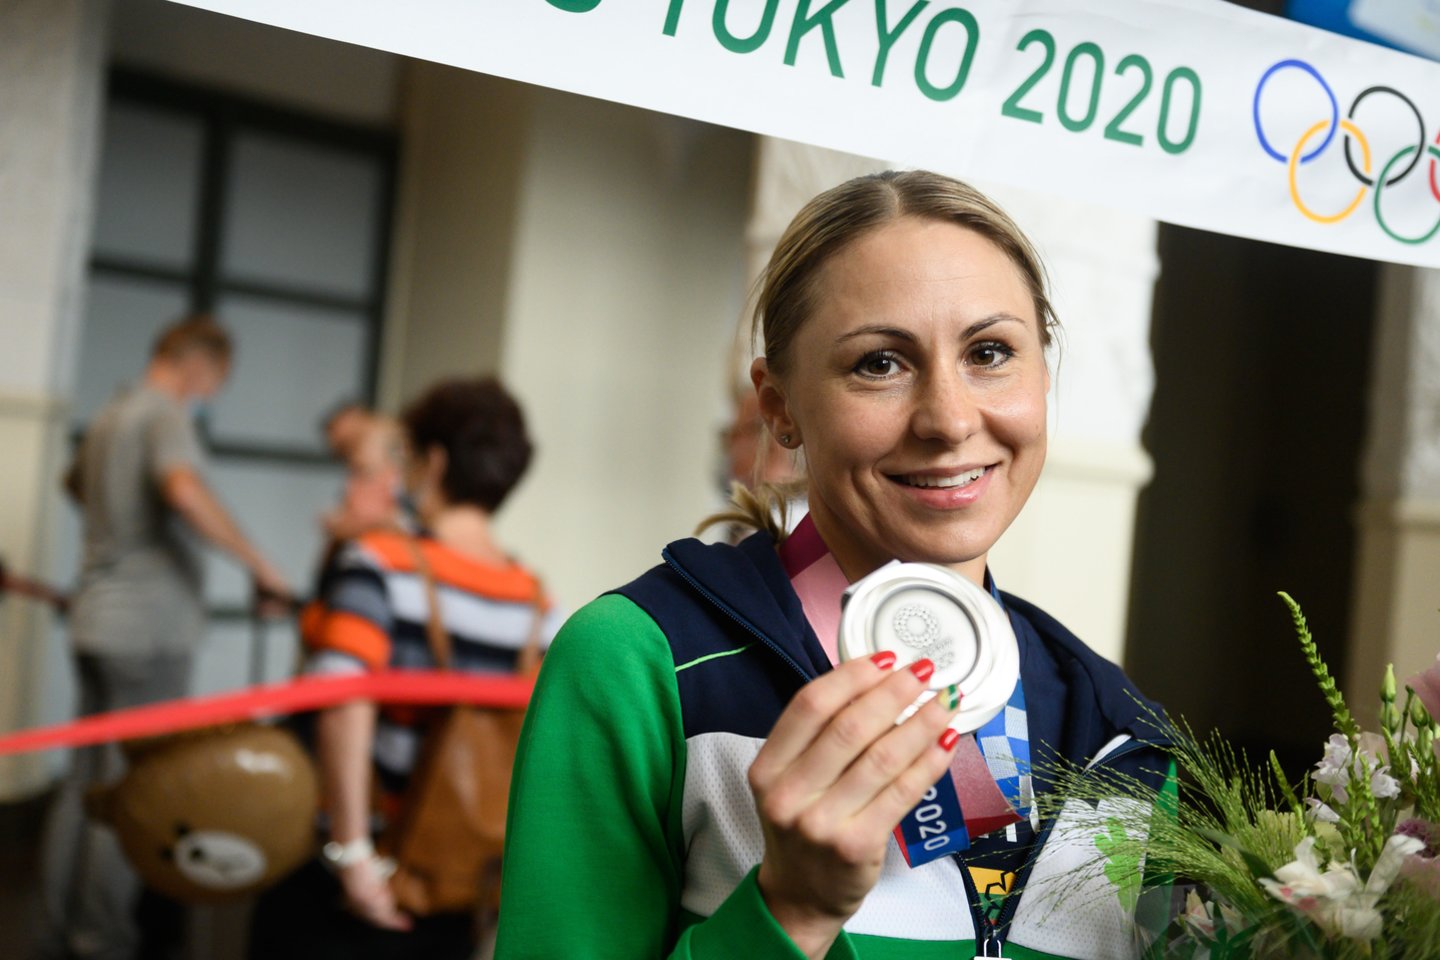 L.Asadauskaitės-Zadneprovskienės iškovotas sidabras Tokijo olimpinėse žaidynėse - vienintelis lietuvių medalis.<br>V.Skaraičio nuotr.